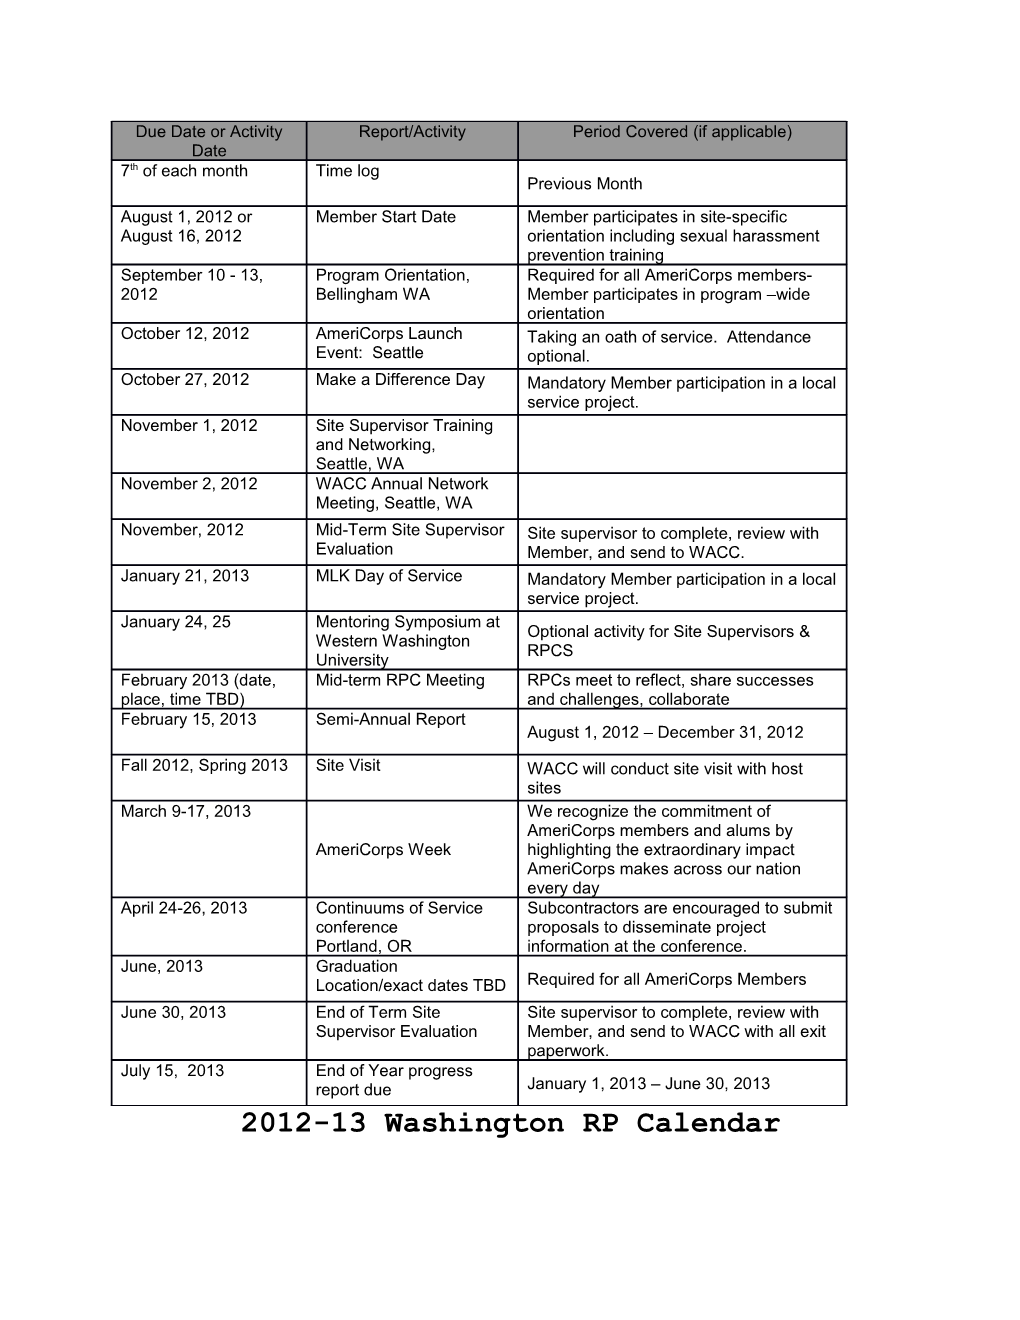 2012-13 Washington RP Calendar